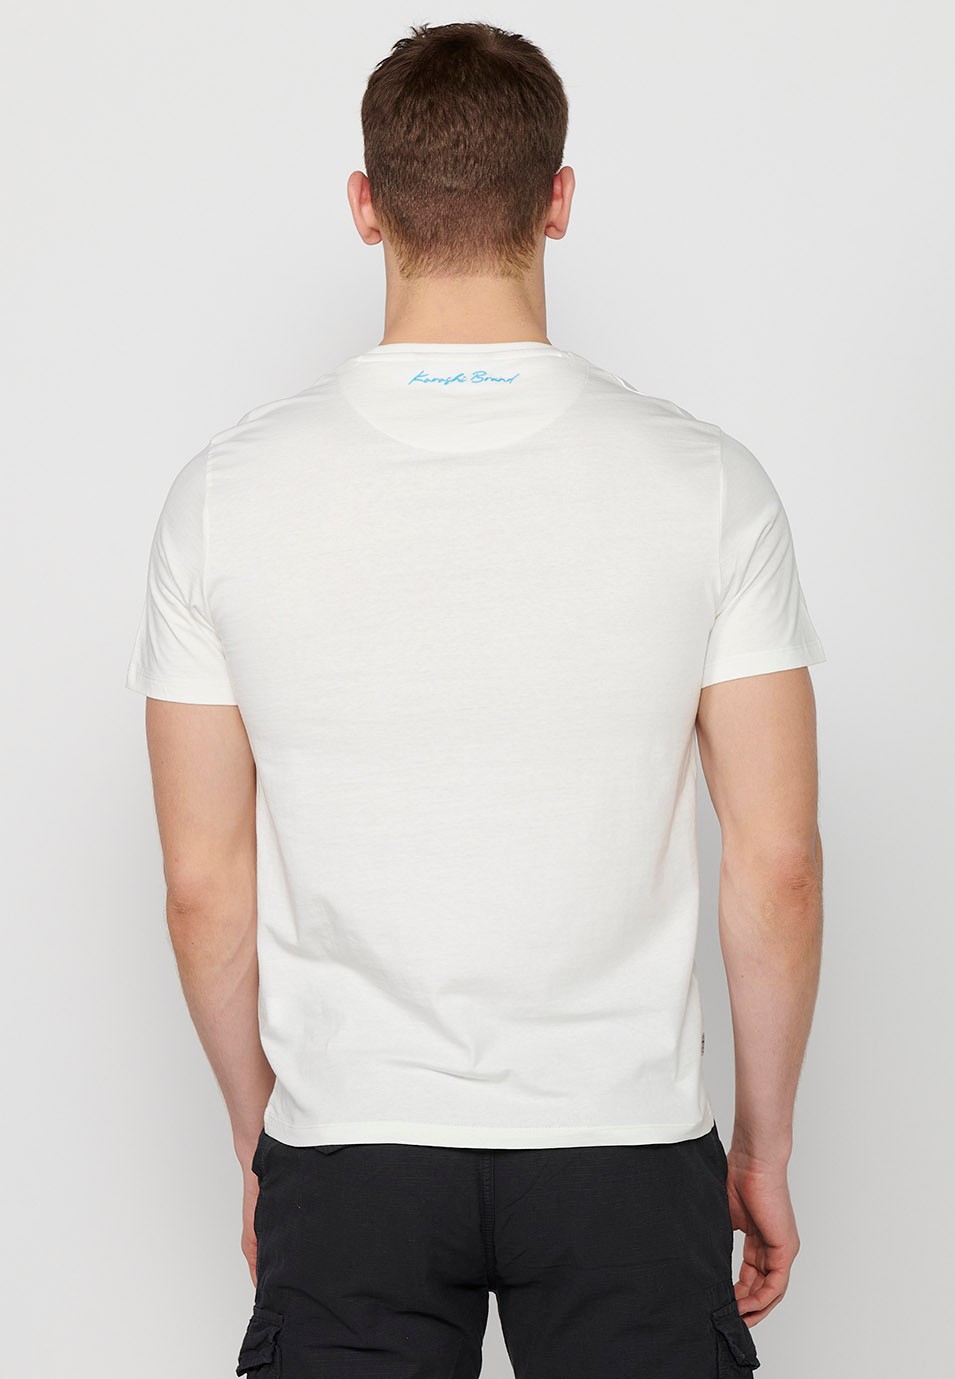 T-shirt en coton à manches courtes, imprimé devant, couleur blanc pour homme